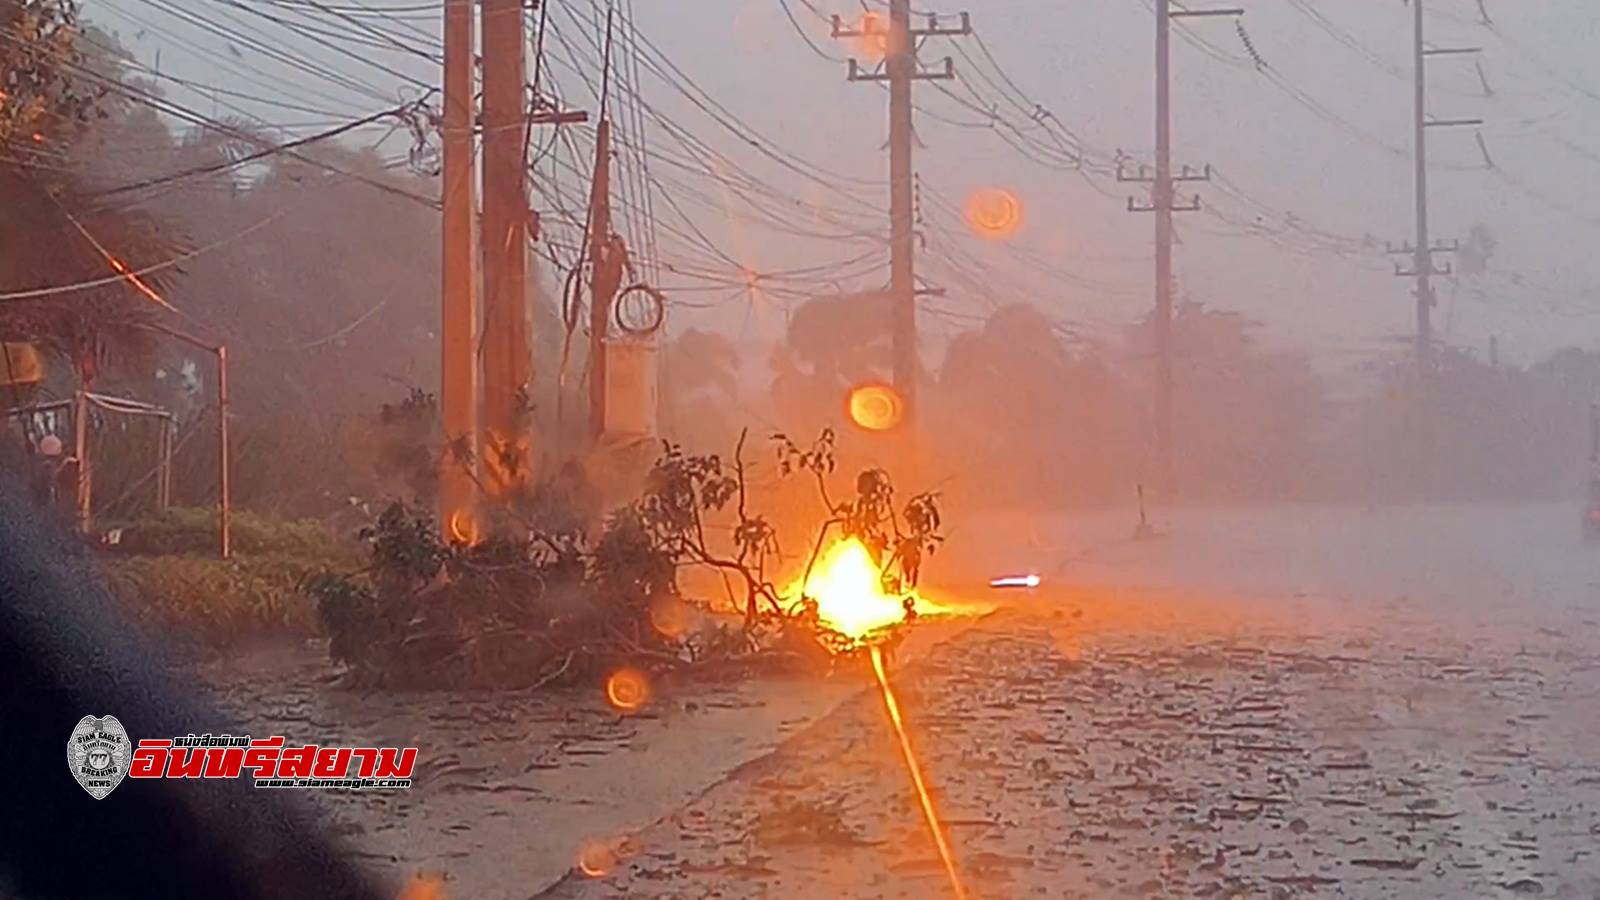 ราชบุรี-ดำเนินฯอ่วม..! เกิดพายุฝนแค่ครึ่งชั่วโมง ต้นไม้หักโค่นทับบ้านและสายไฟแรงสูงขาด